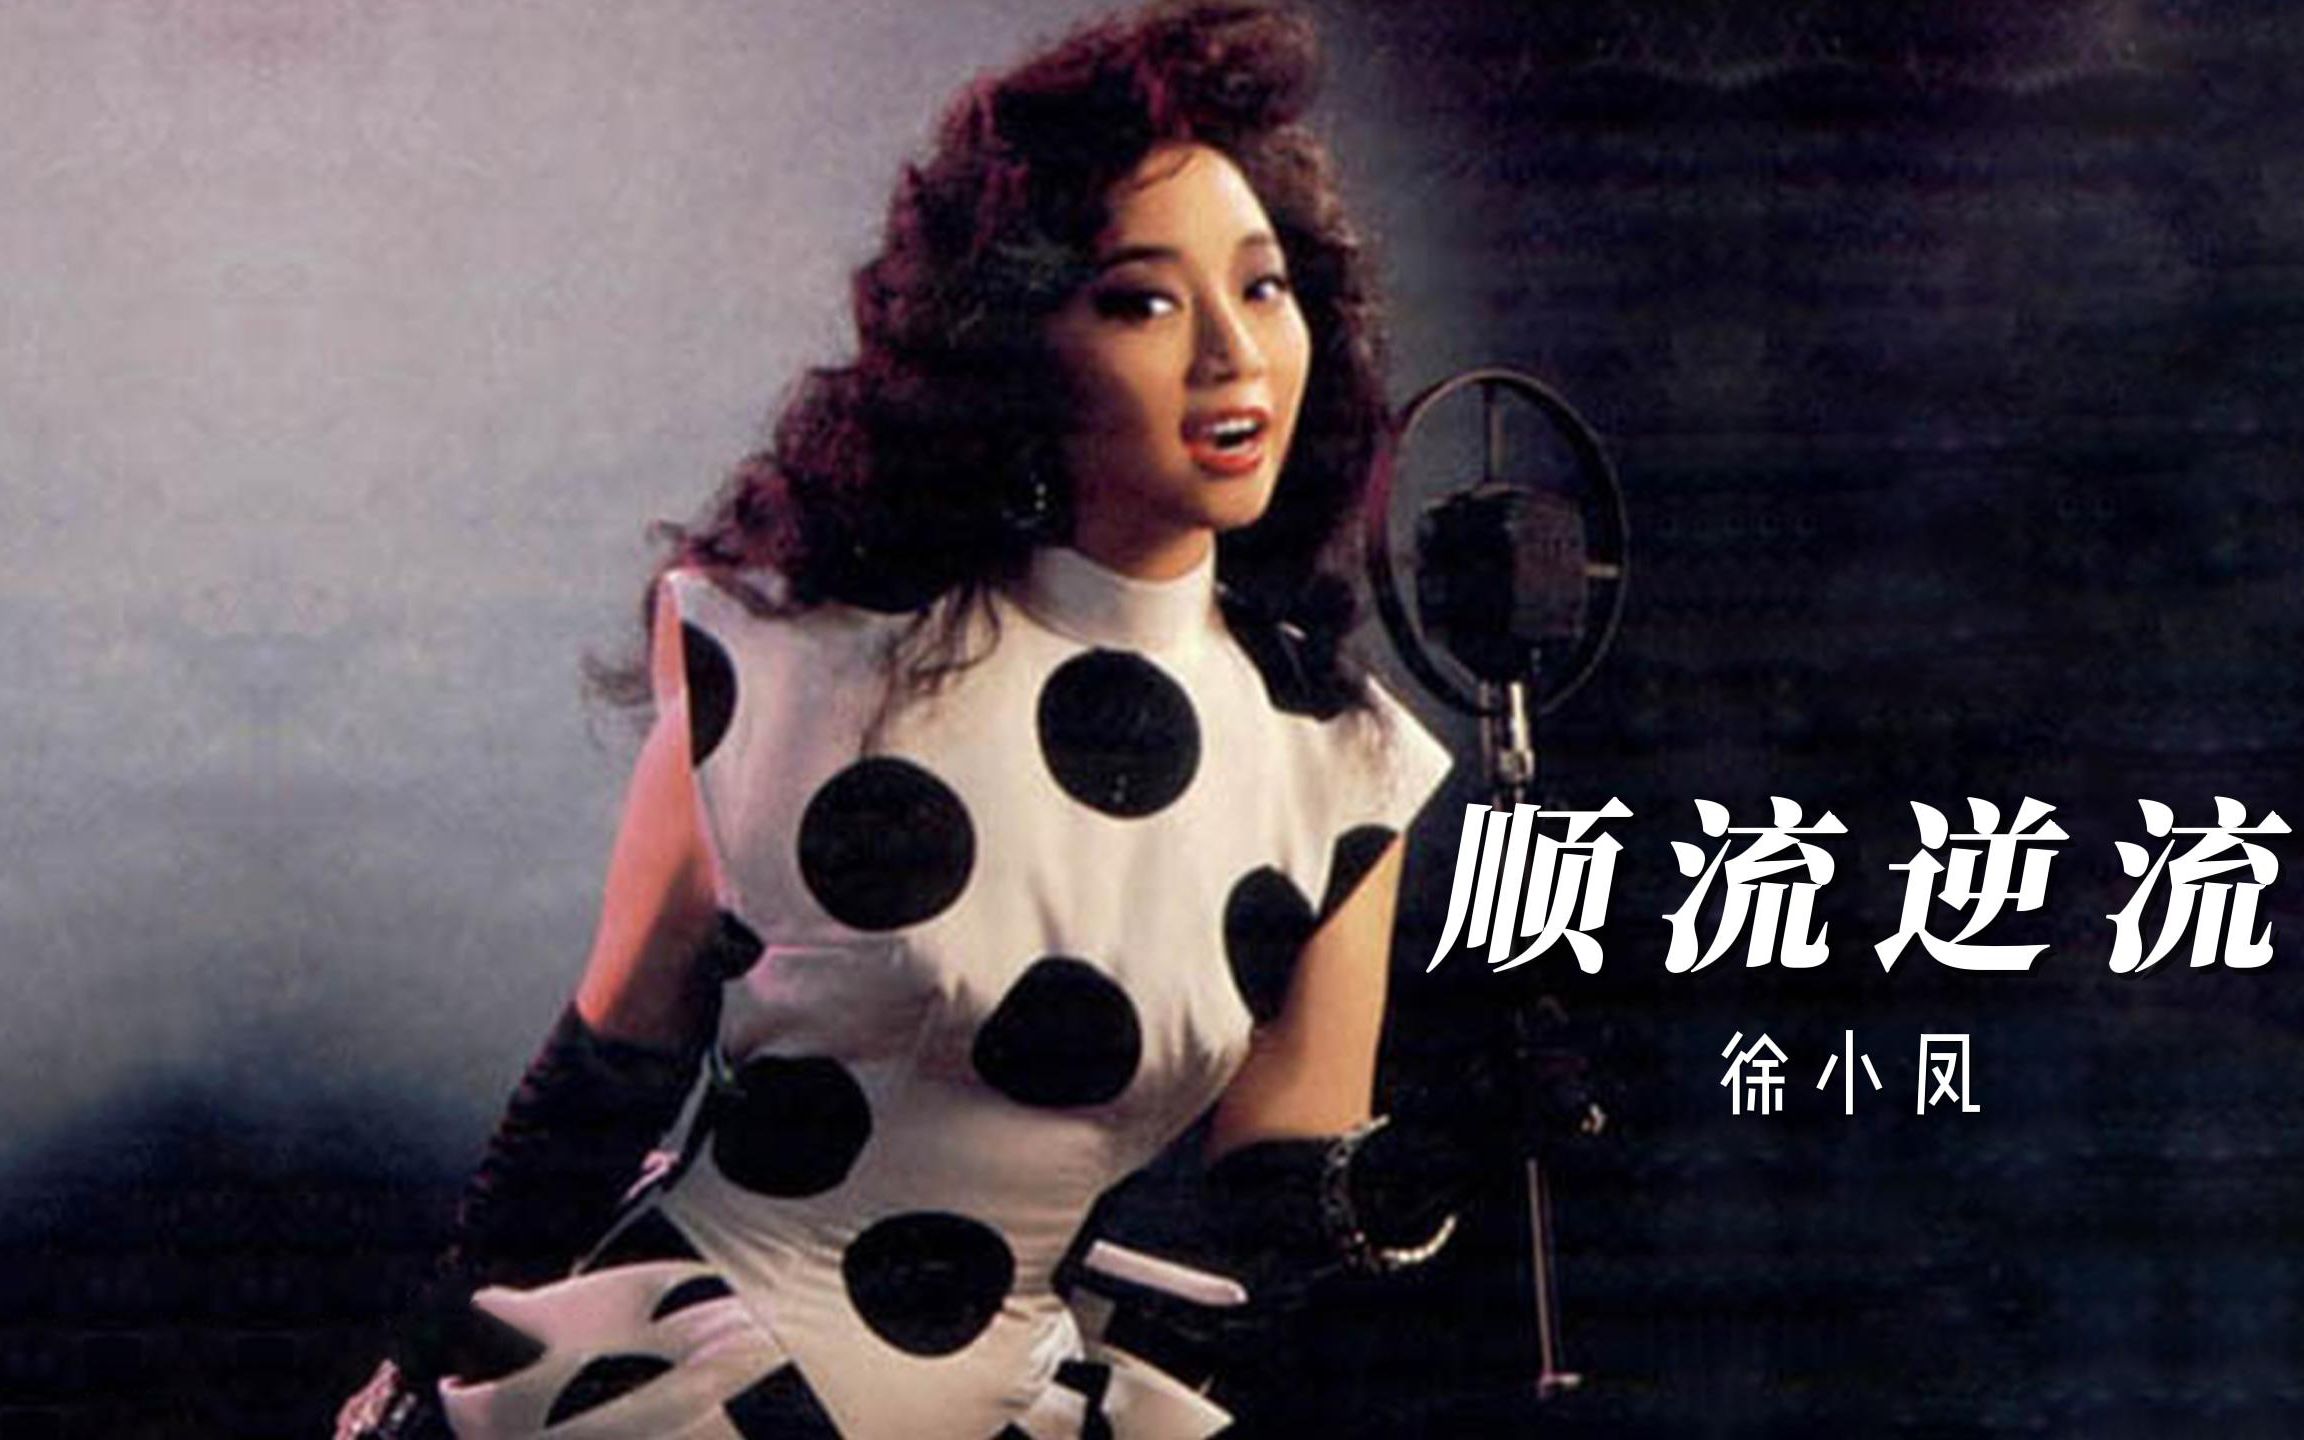 徐小凤《顺流逆流》,香港乐坛大姐大的这首歌非常鼓舞人,以此献给今天